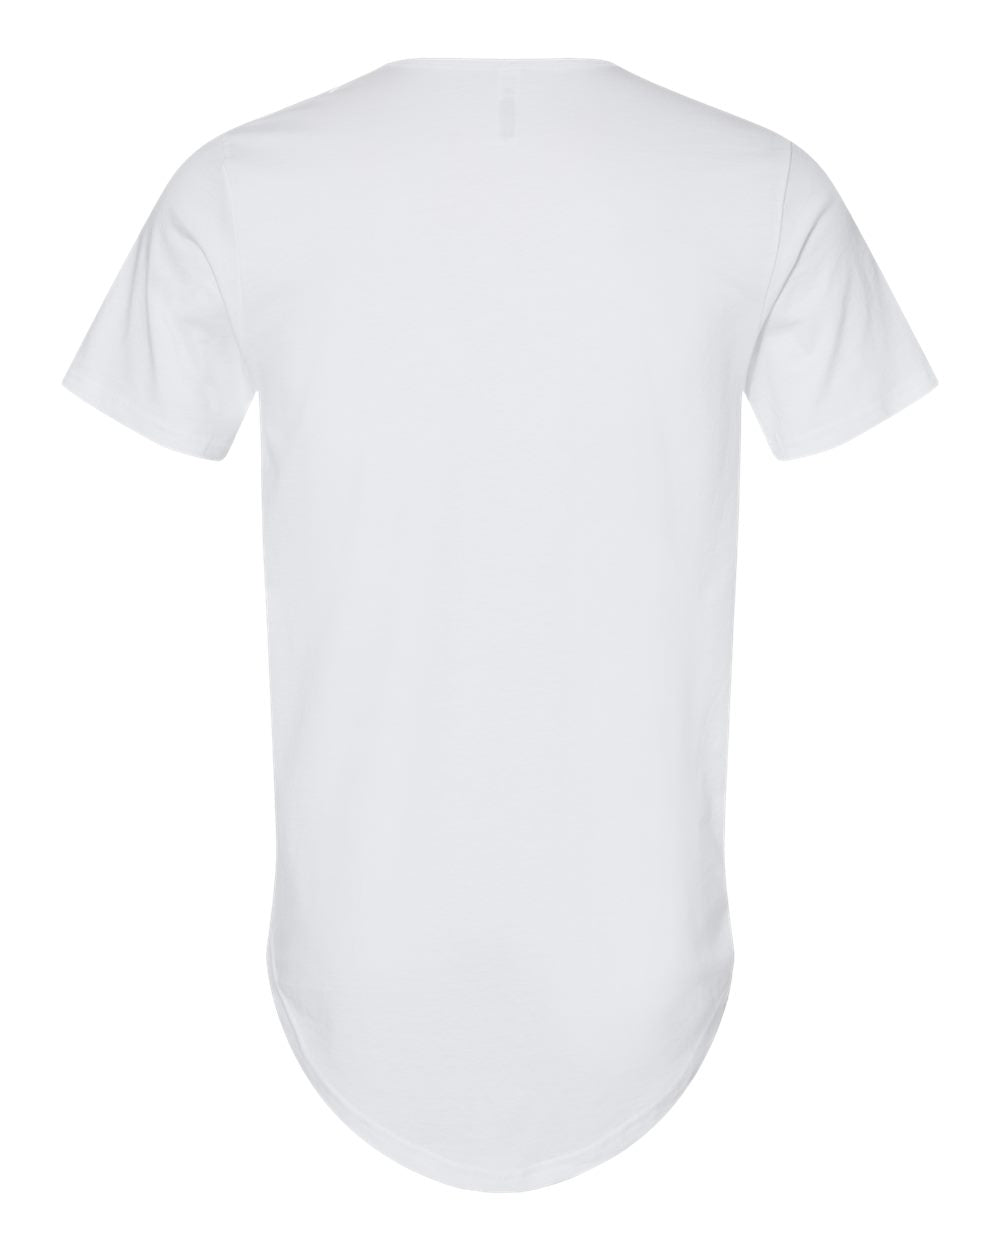 HERITAJ-UNITY-RED STRIPE (Curved Hem Short Sleeve T-Shirt) BL